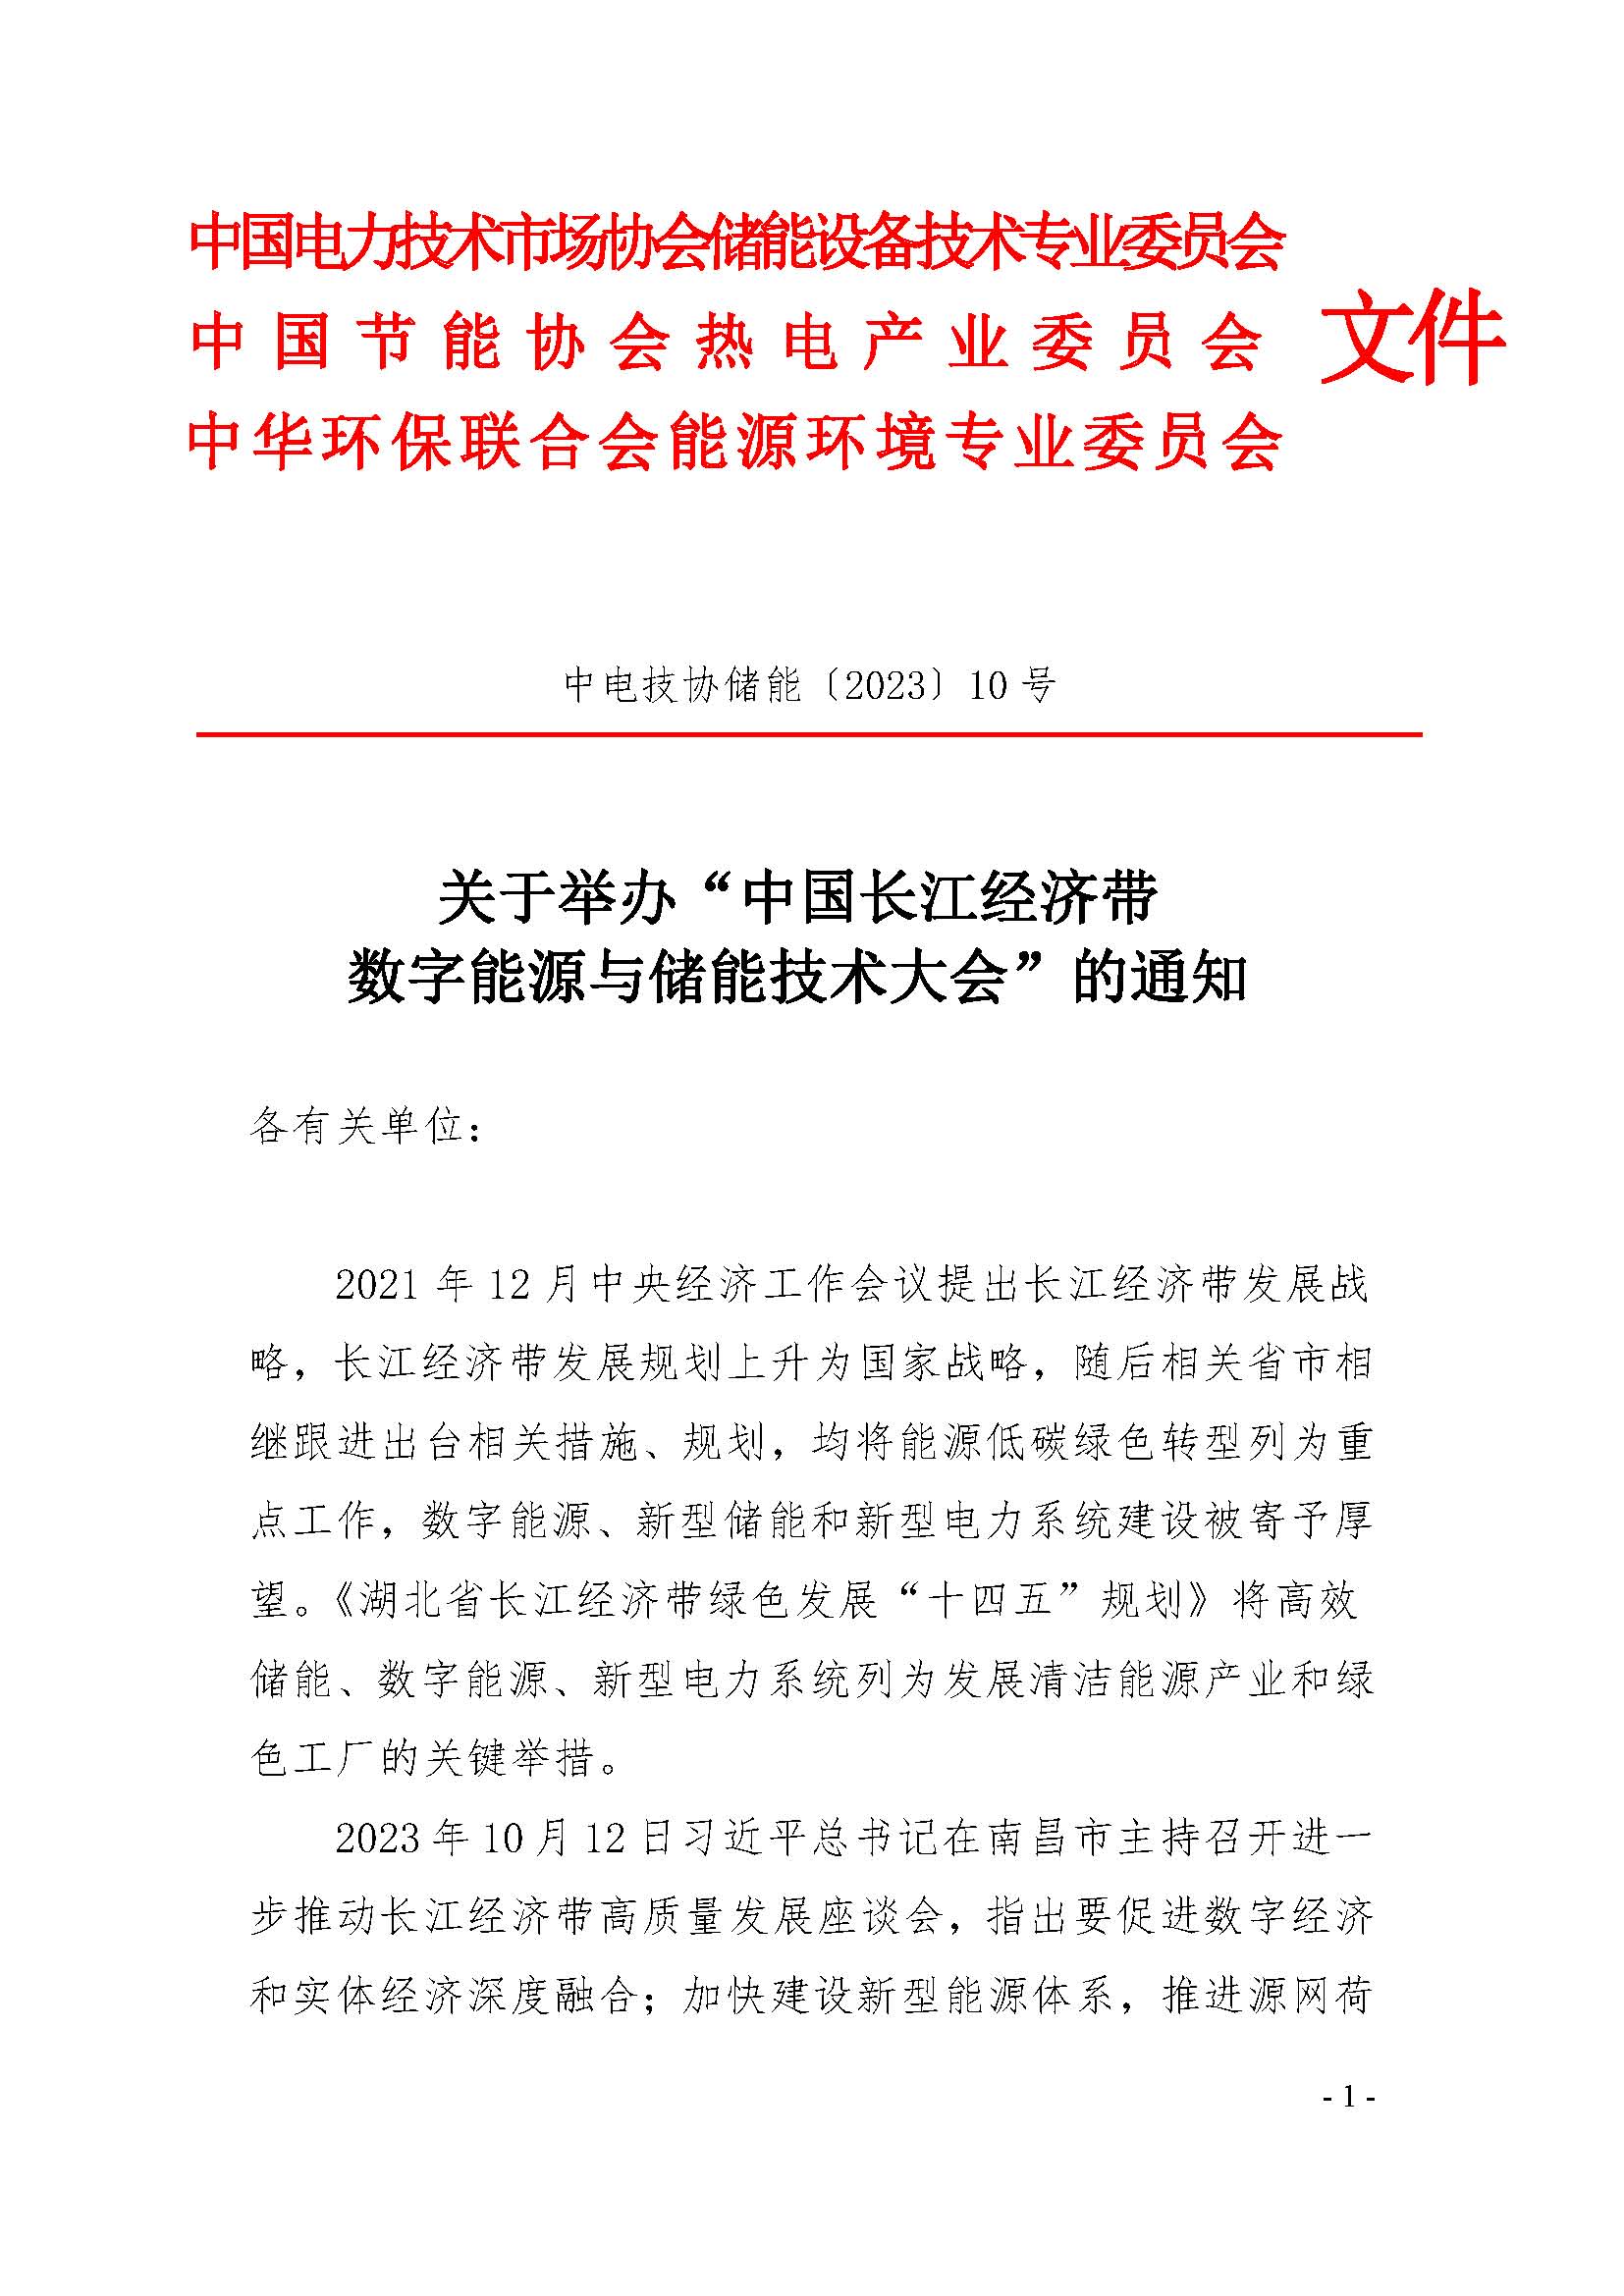 (大会)关于举办“中国长江经济带数字能源与储能技术大会”的通知(1)_页面_1.jpg